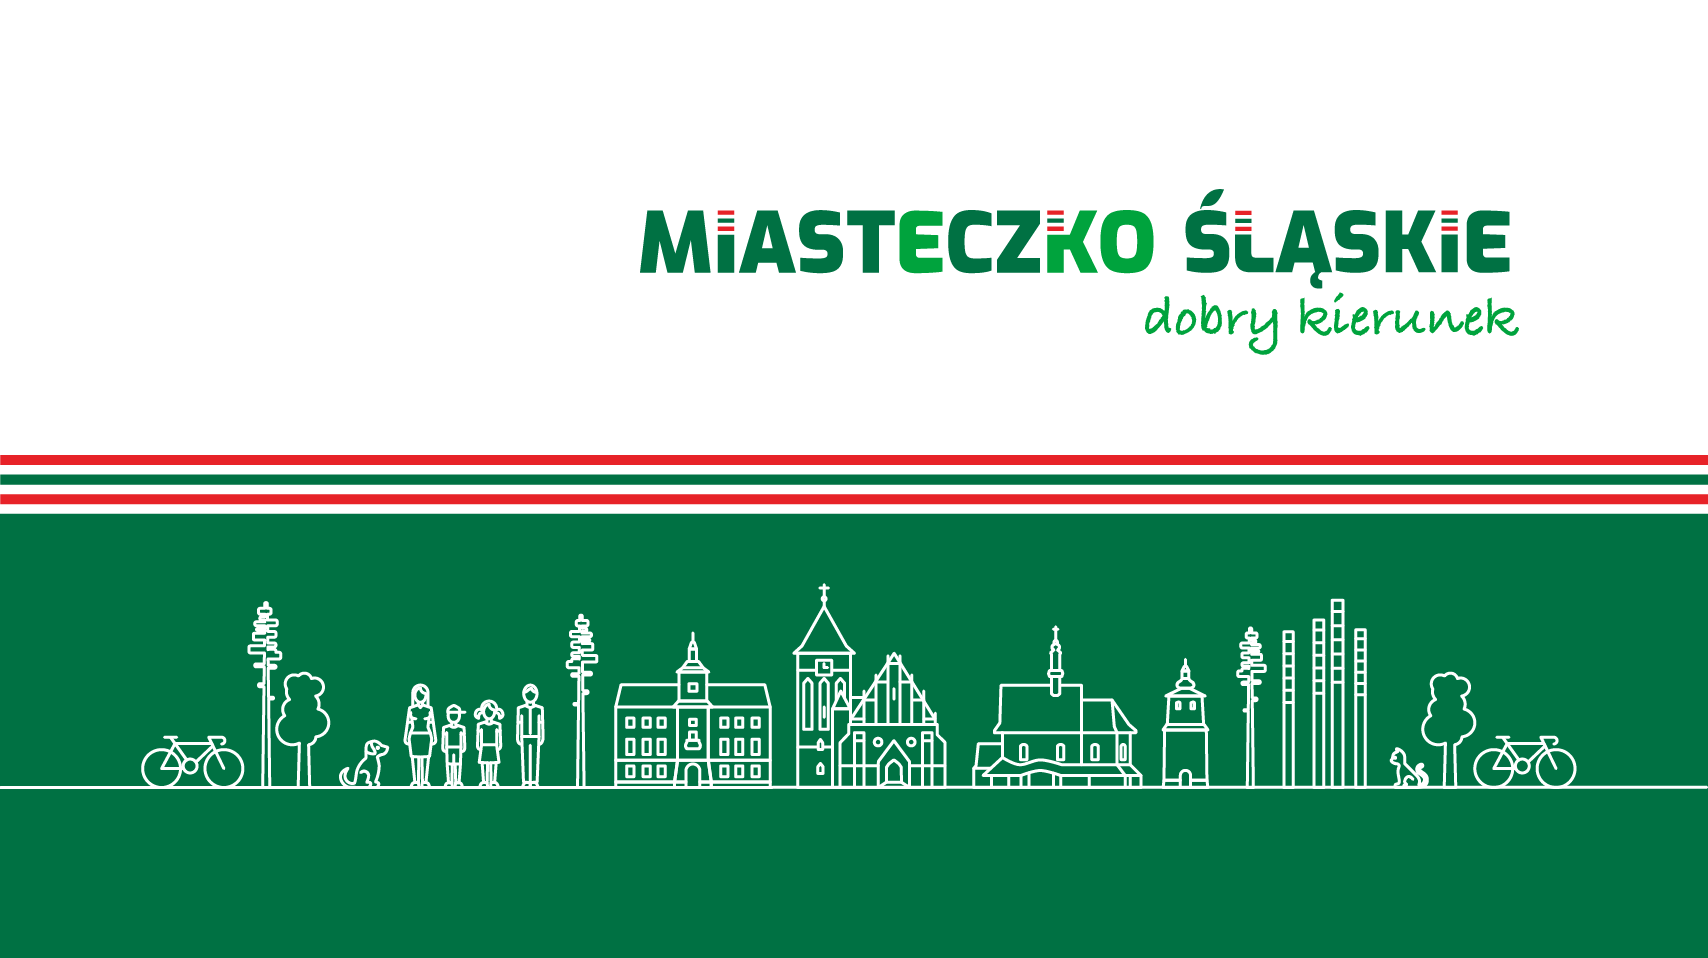 Zarządzenie nr 1266/22 Burmistrza Miasta Miasteczko Śląskie